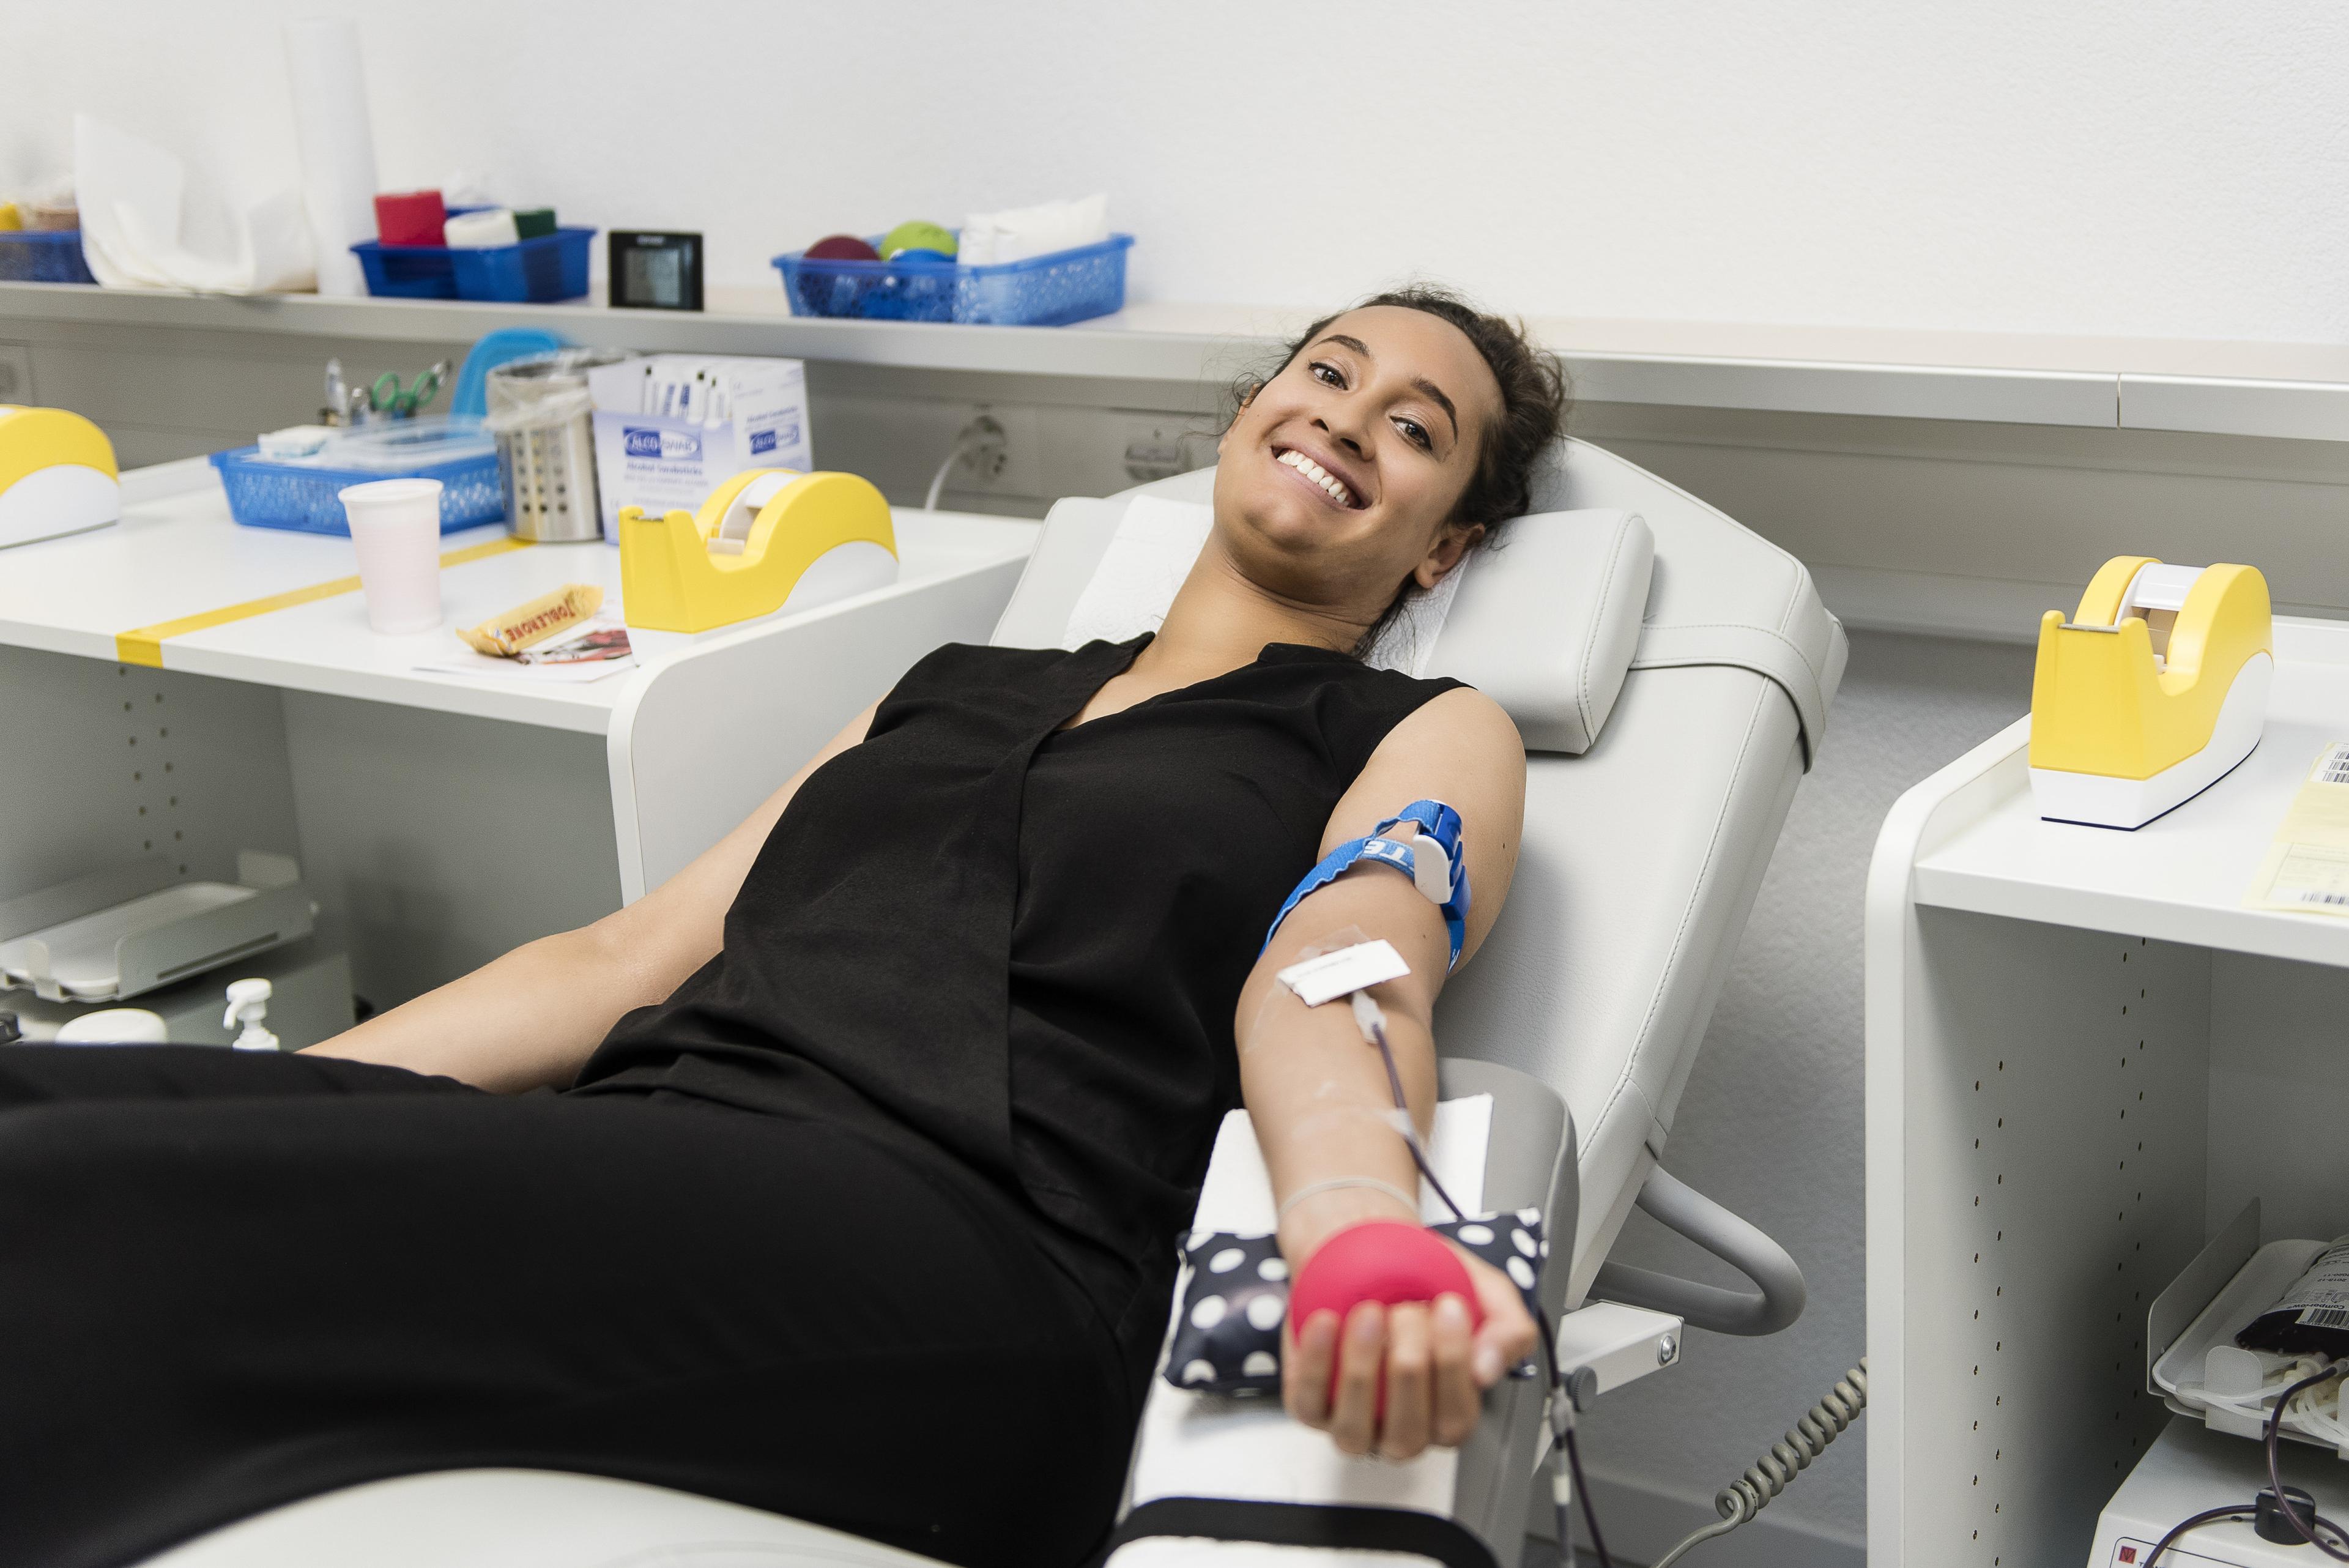 Una signora che dona il sangue, sdraiata su una poltrona reclinabile.